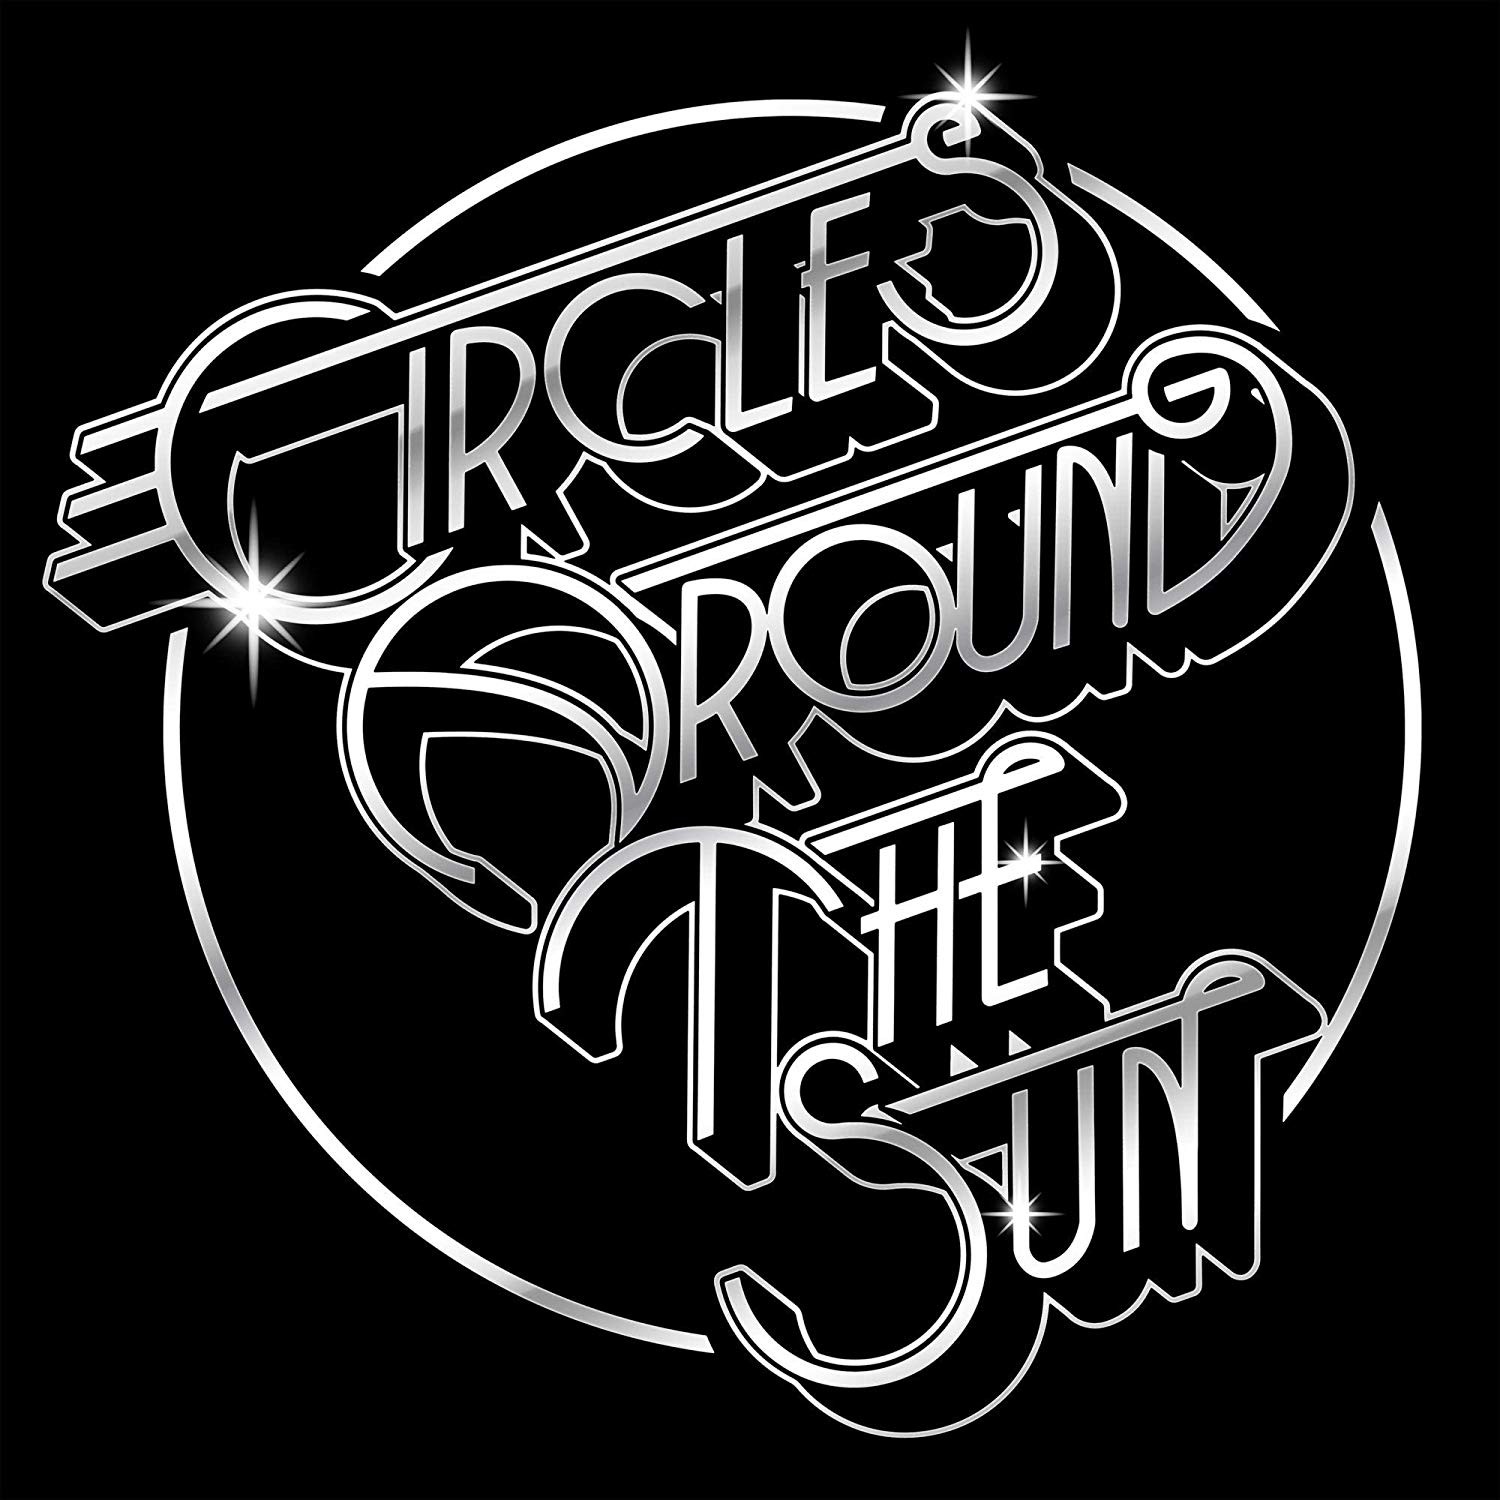 Circles Around The Sun - Circles Around The Sun Vinyl LP